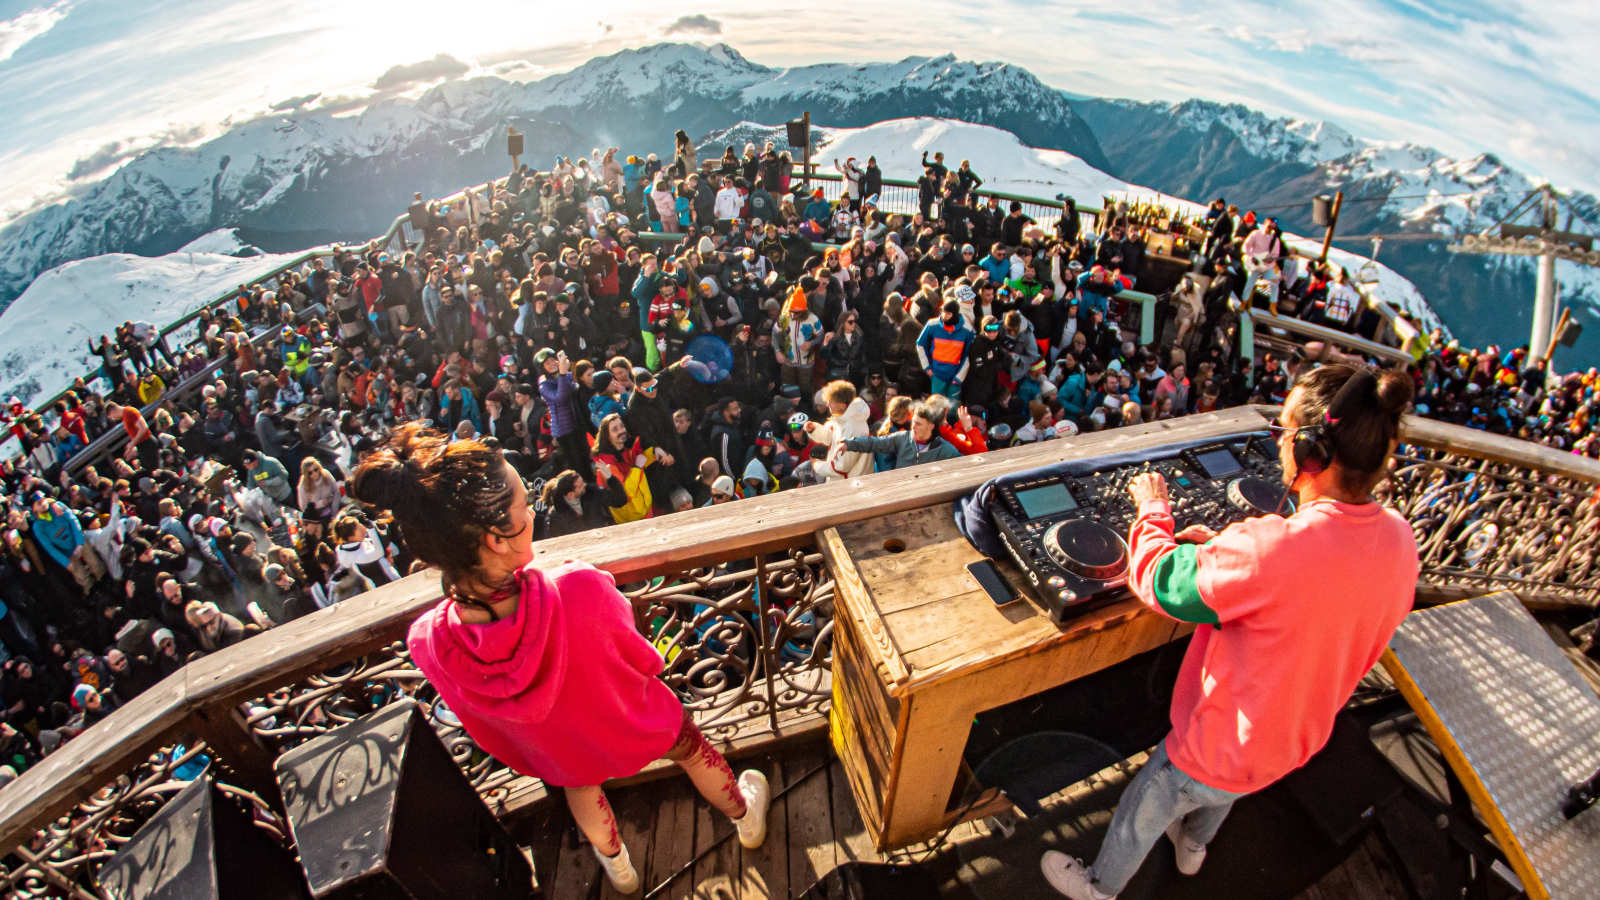 La Folie Douce Alpe d'Huez - Clubbing